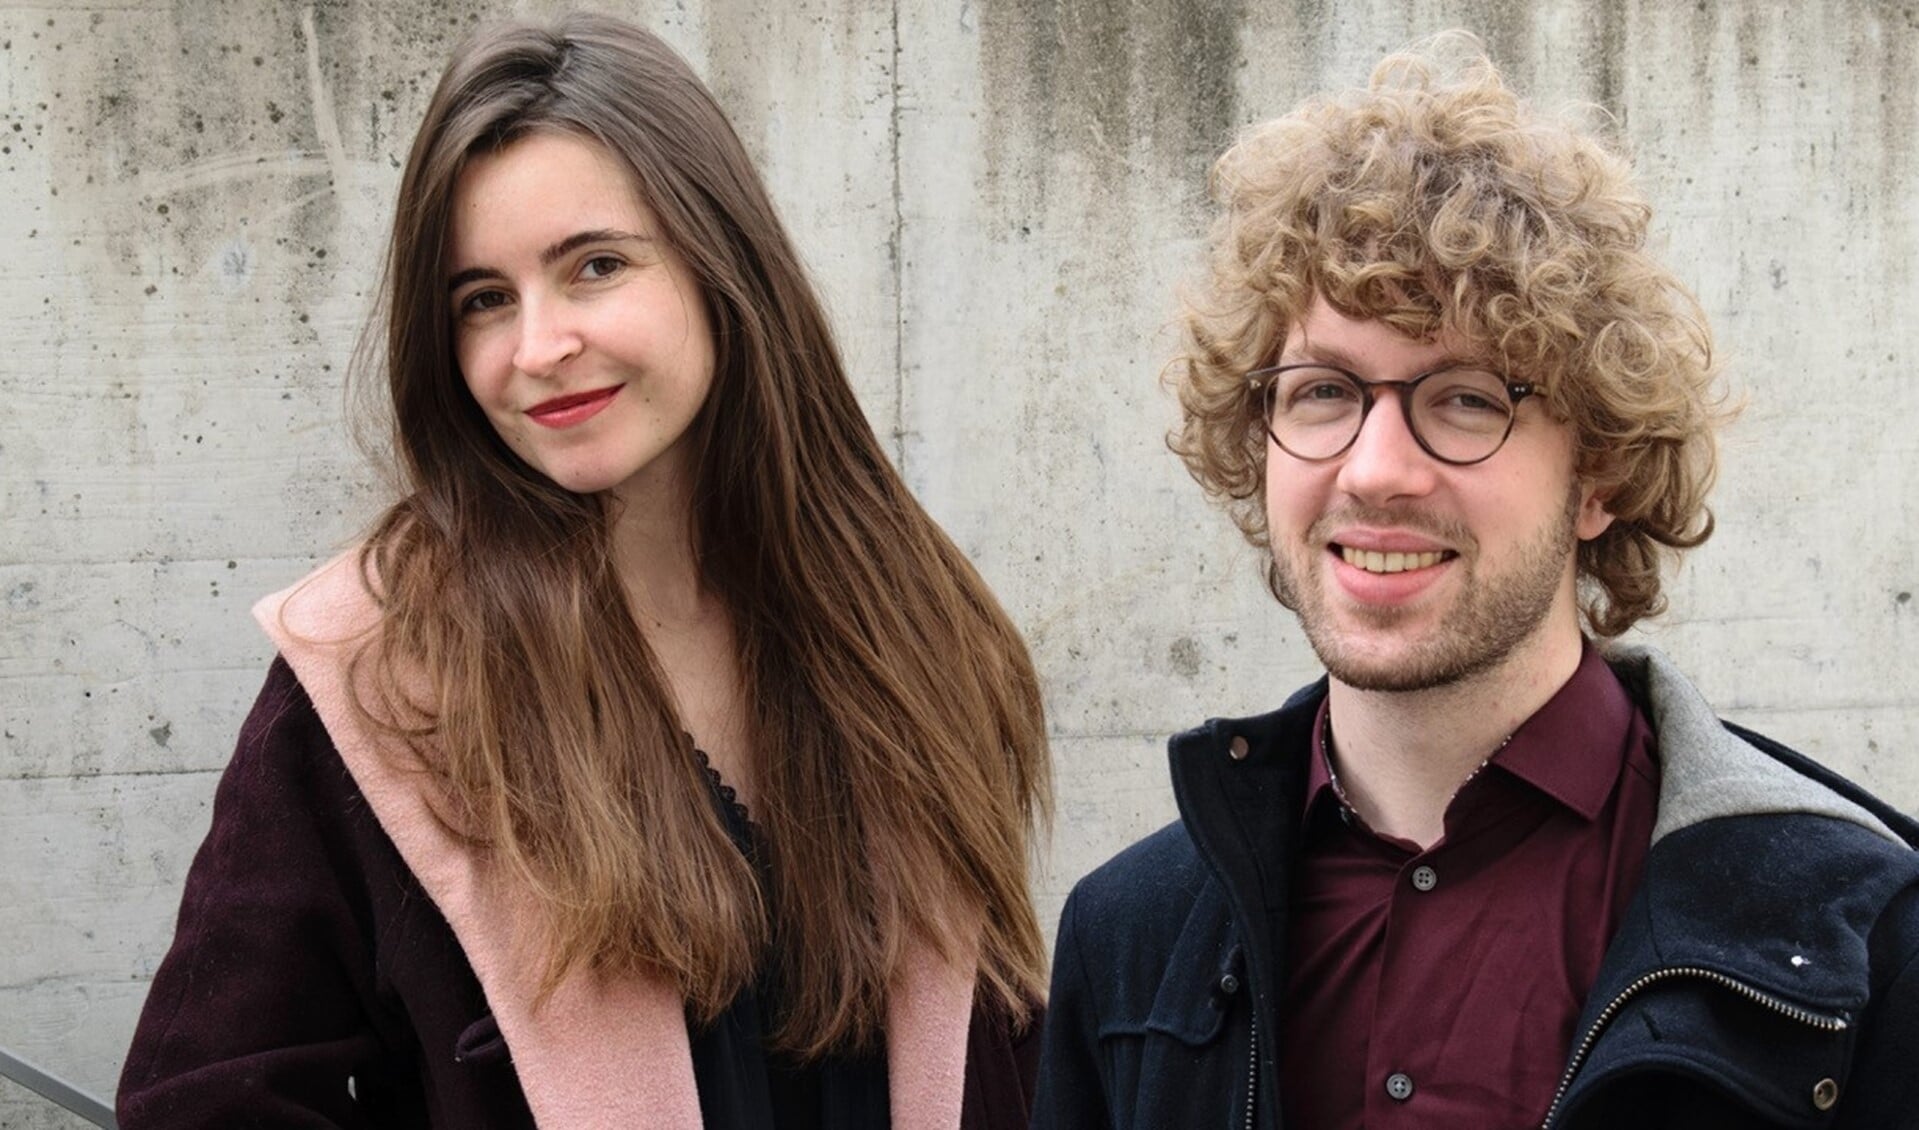 Cécile Chartrain (klavecimbel) en Matthijs van der Moolen (baroktrombone) treden speciaal voor dit programma op als duo.  